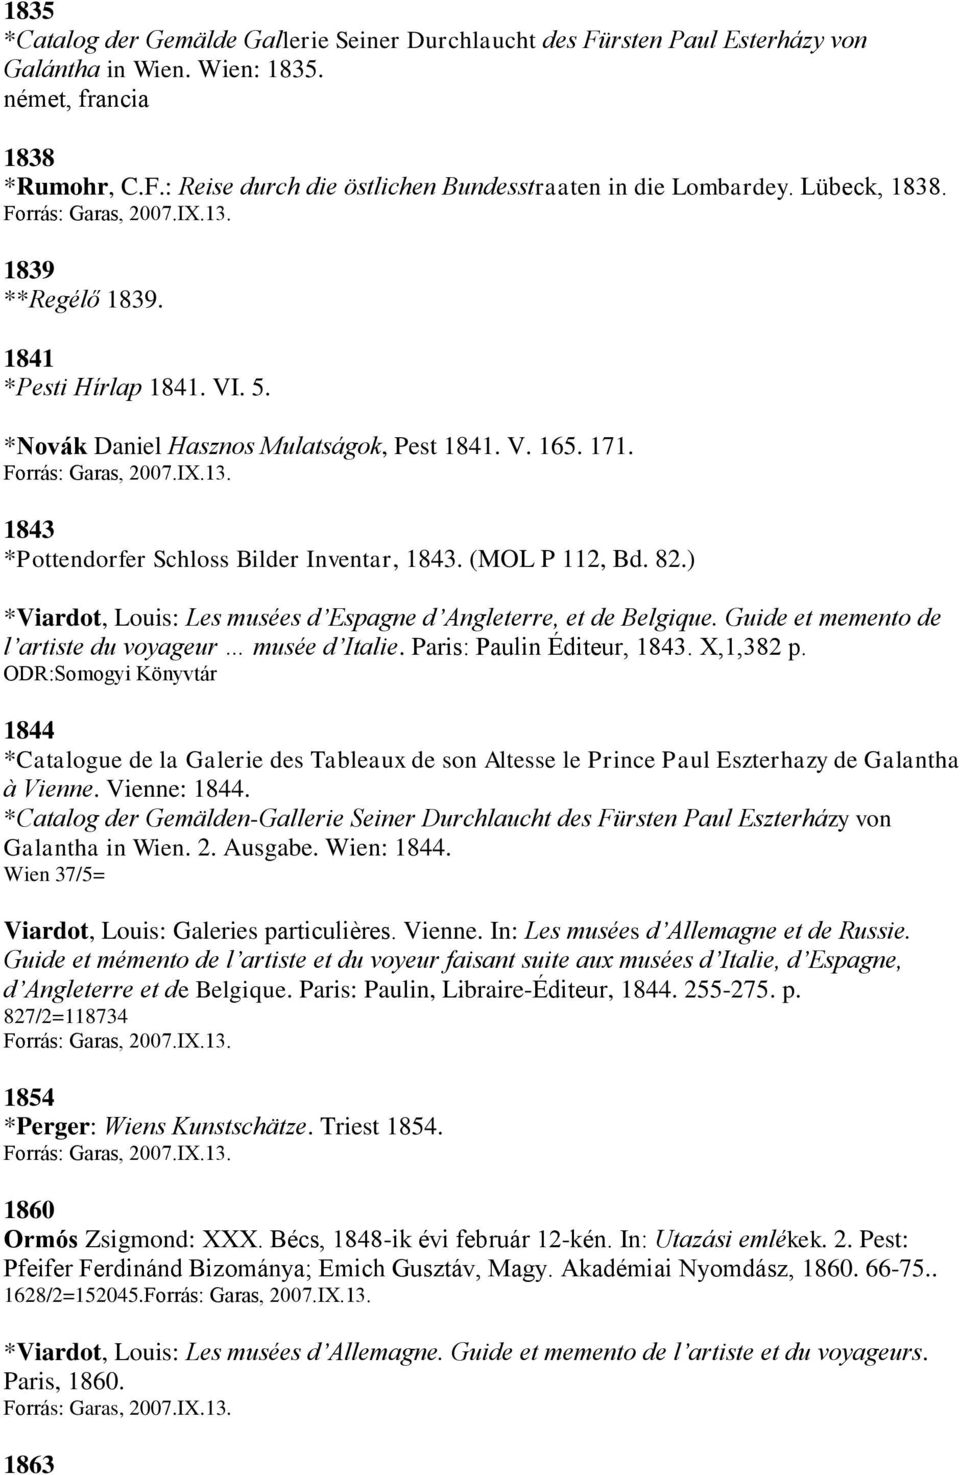 ) *Viardot, Louis: Les musées d Espagne d Angleterre, et de Belgique. Guide et memento de l artiste du voyageur musée d Italie. Paris: Paulin Éditeur, 1843. X,1,382 p.